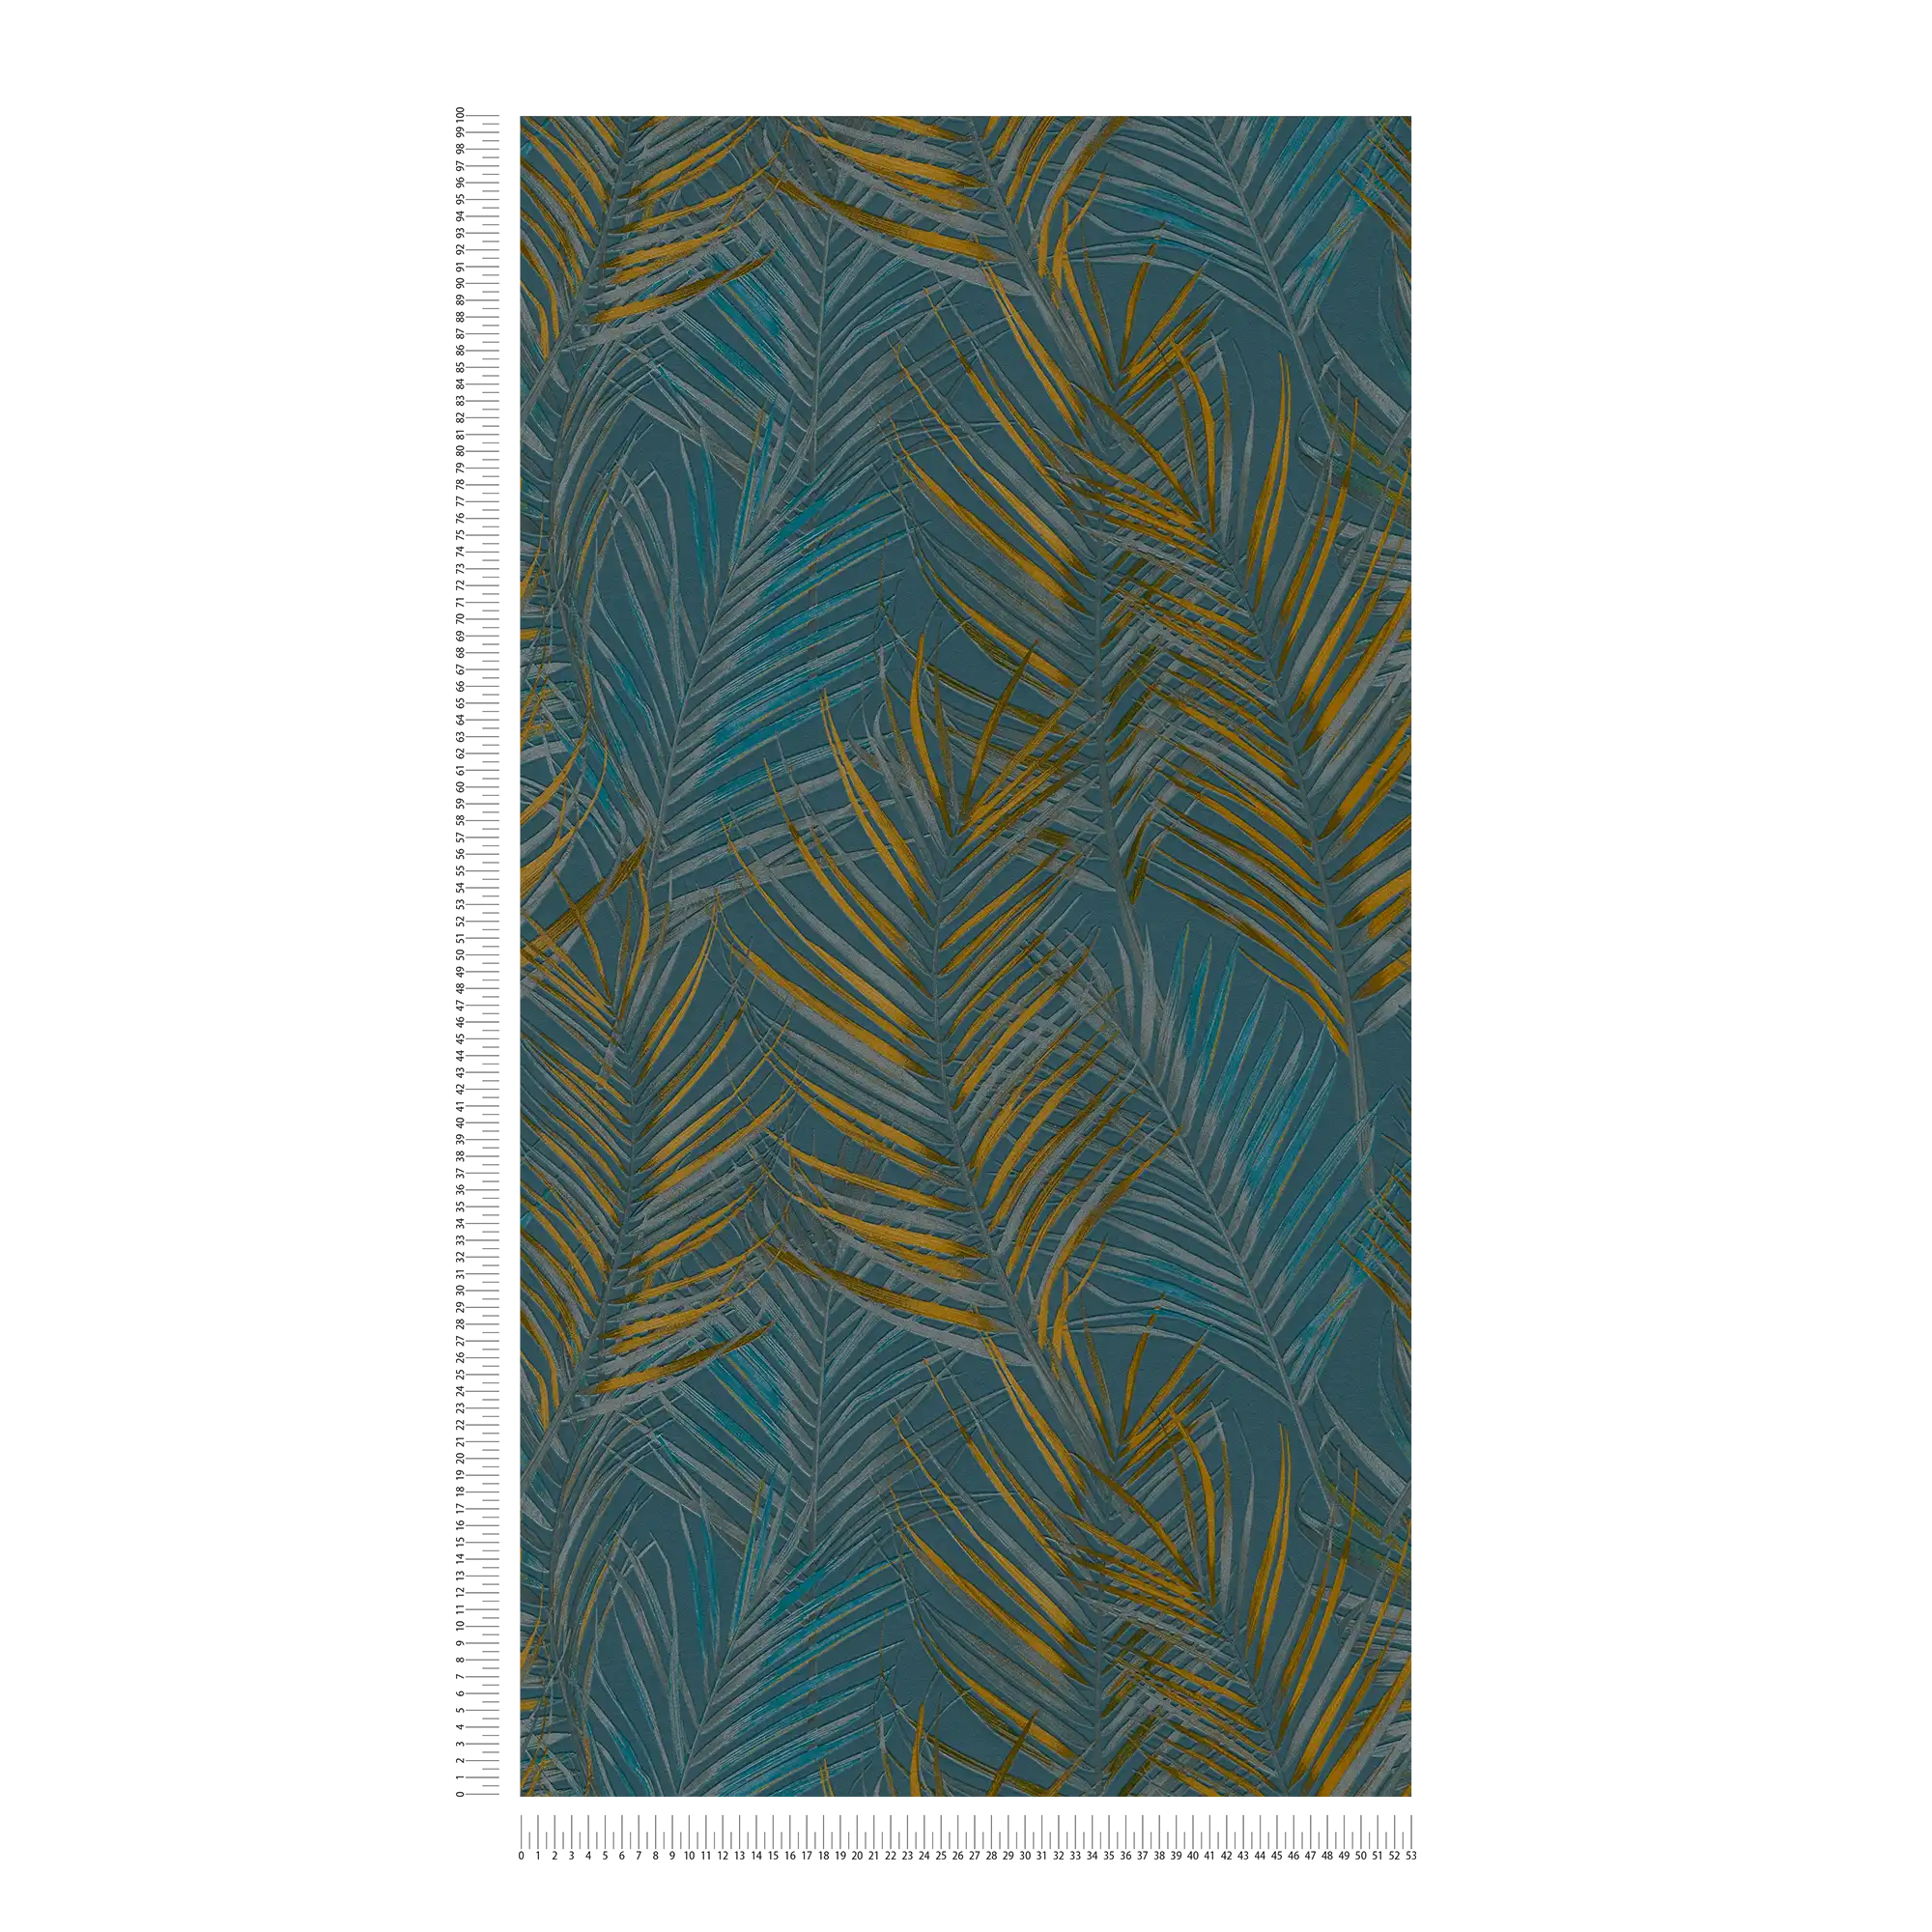             behang jungle patroon met palmbladeren - blauw, geel, petrol
        